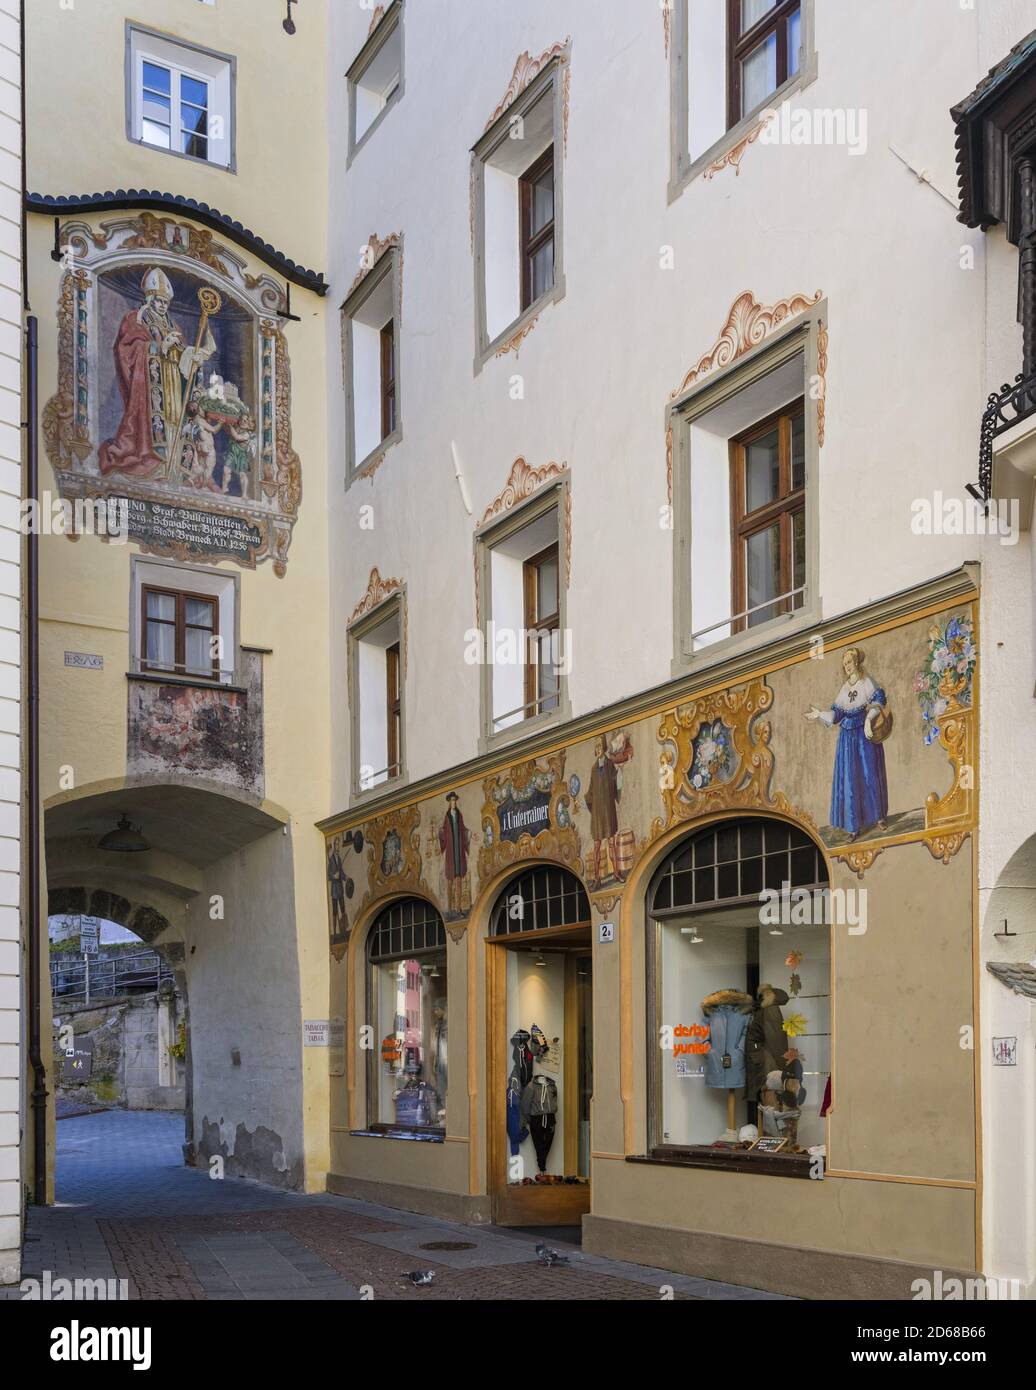 La porte Ragen ou Porta Ragen dans la vieille ville médiévale, Bruneck, Brunico dans la vallée de Puster, Tyrol du Sud, Alto Adige, europe, Europe centrale, italie Banque D'Images